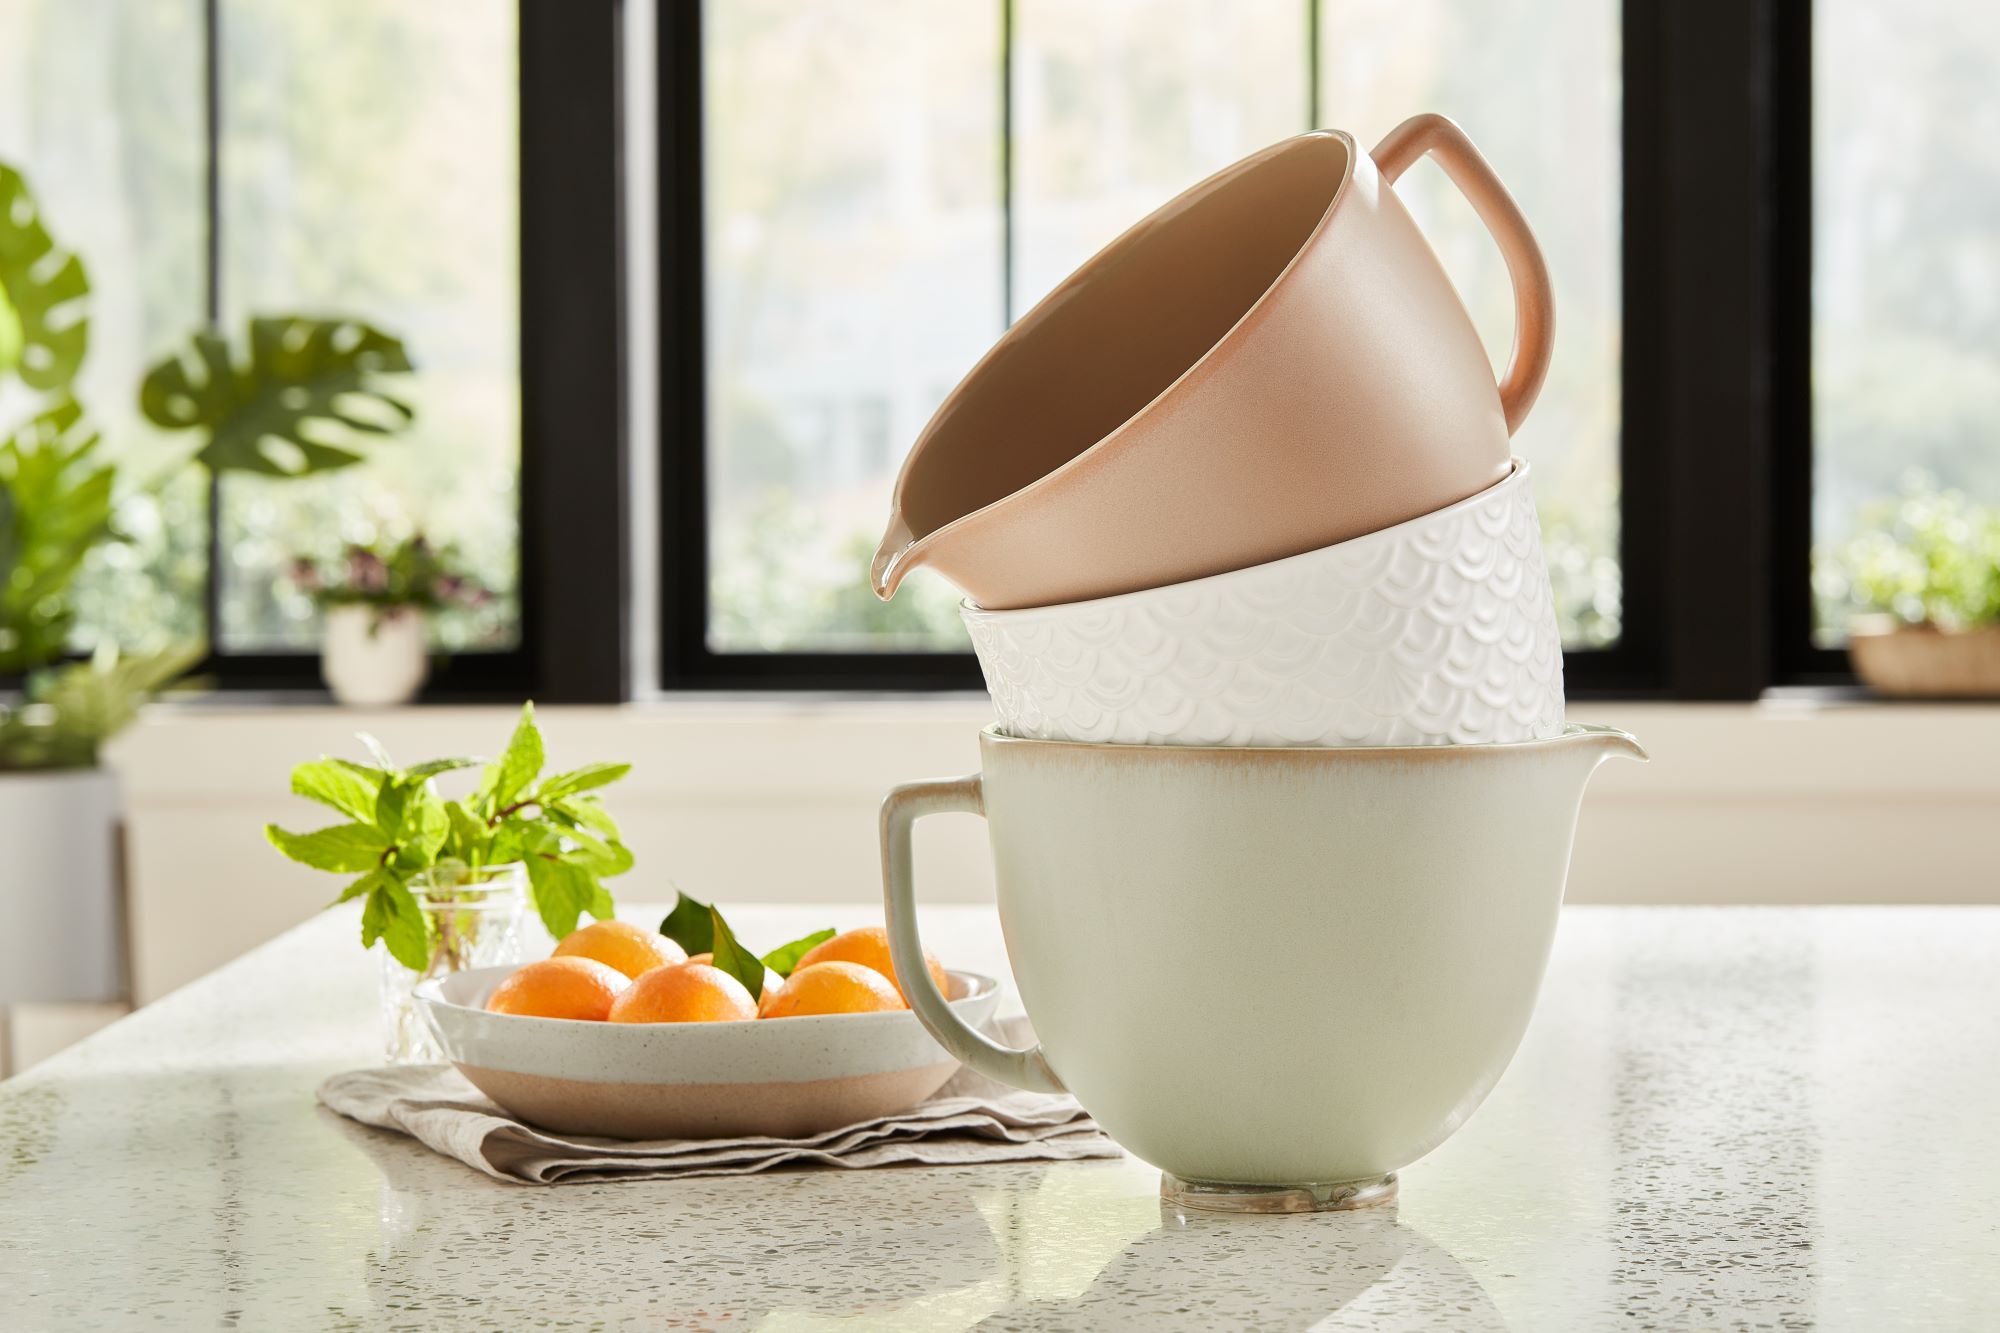 5-Quart Patterned Ceramic Bowl for Tilt-Head Mixers (Black Shell), KitchenAid